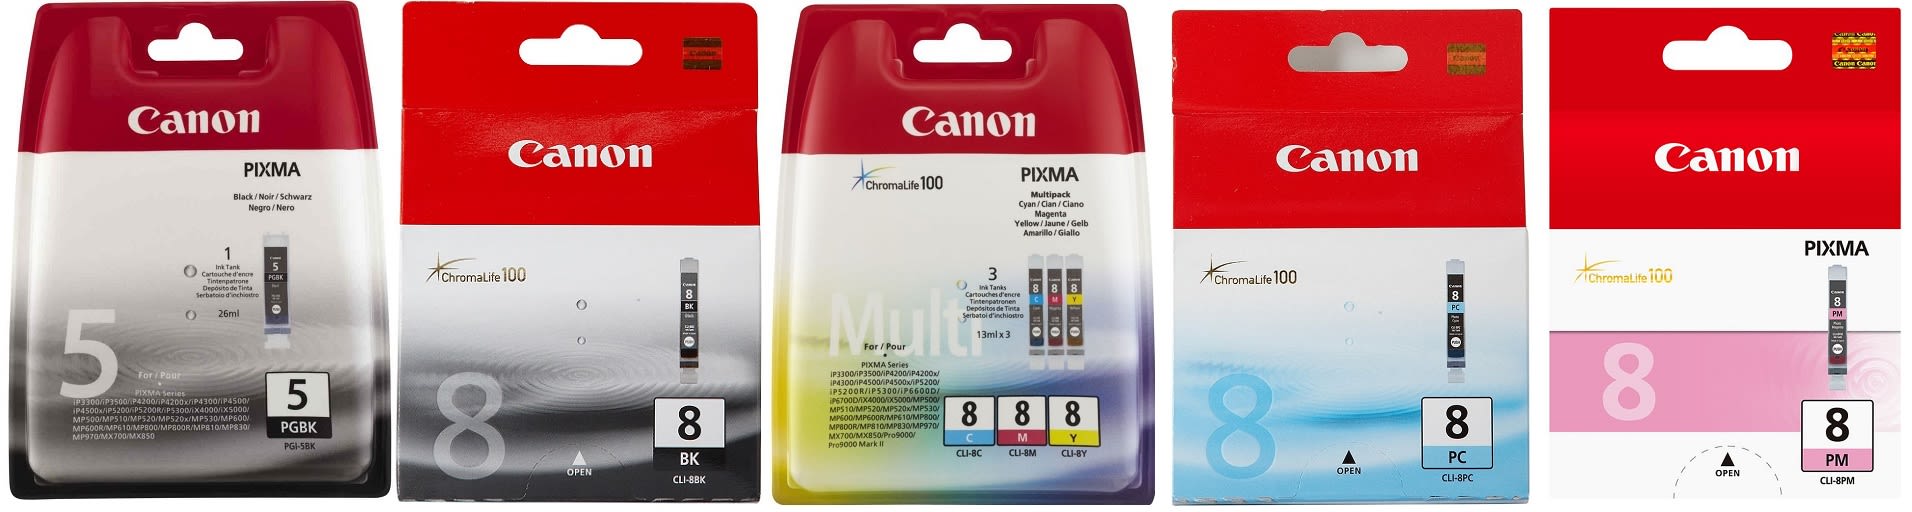 Картридж для Canon Pixma iP6700 Купить комплект оригинальных чернил.